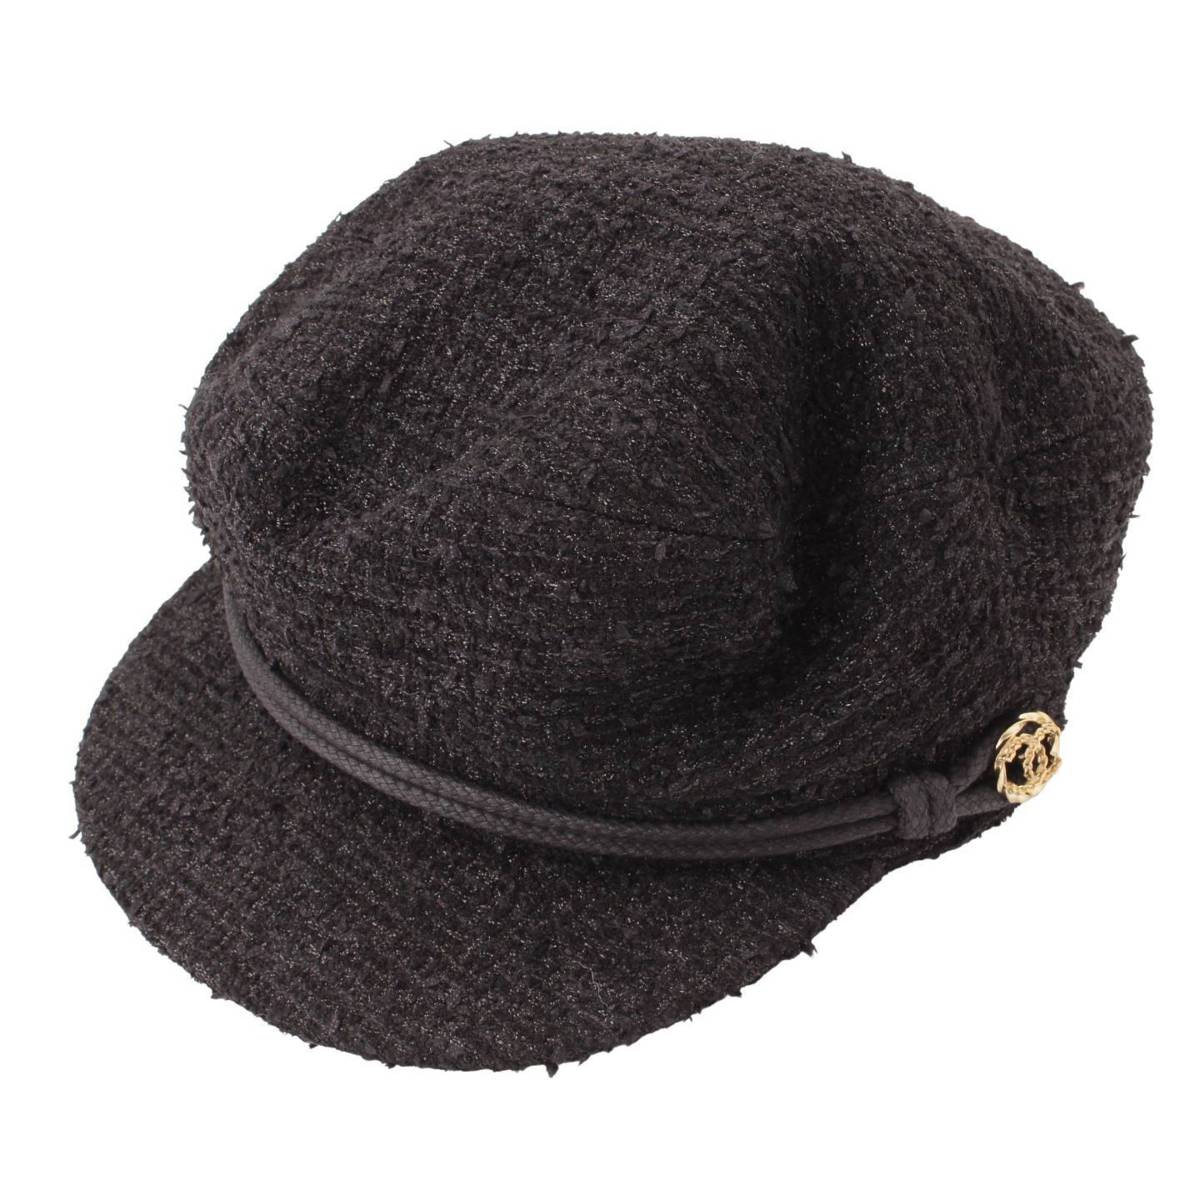 シャネル(Chanel) ココマーク ツイード キャスケット キャップ 帽子